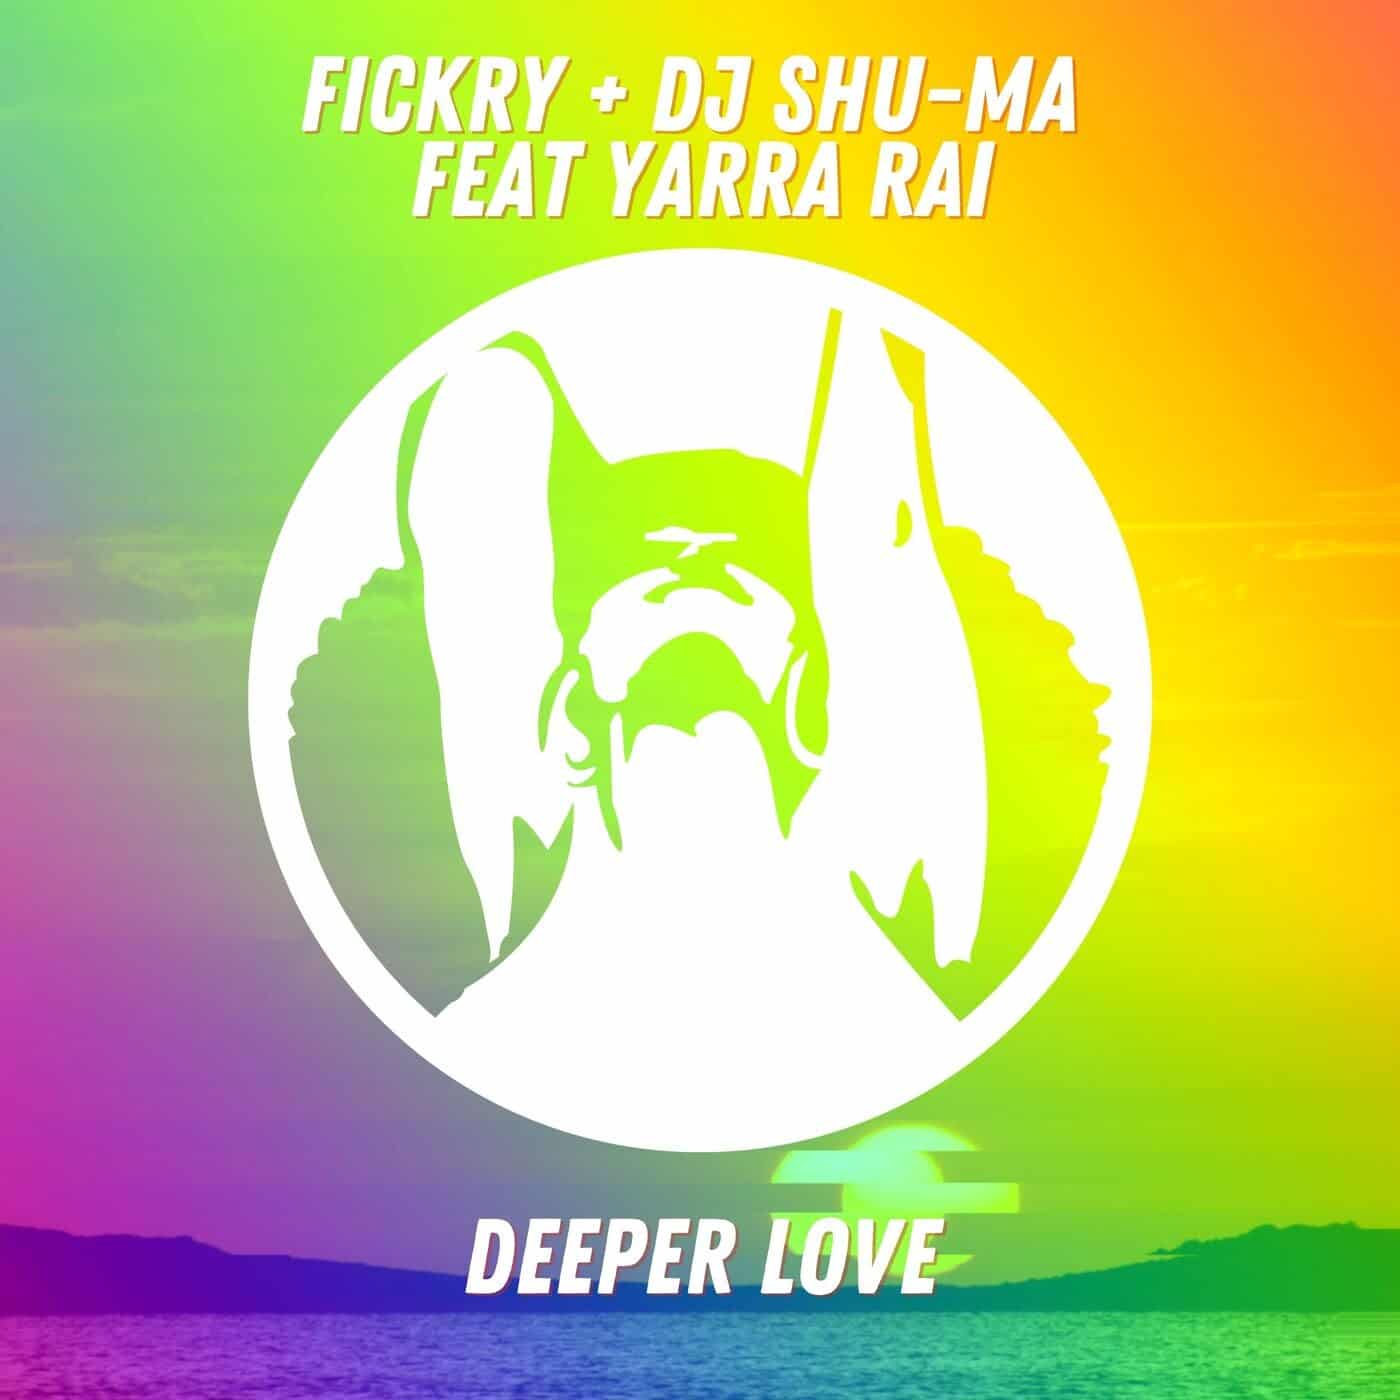 Download Fickry, Dj Shu-ma Feat Yarra Rai - Deeper Love on Electrobuzz